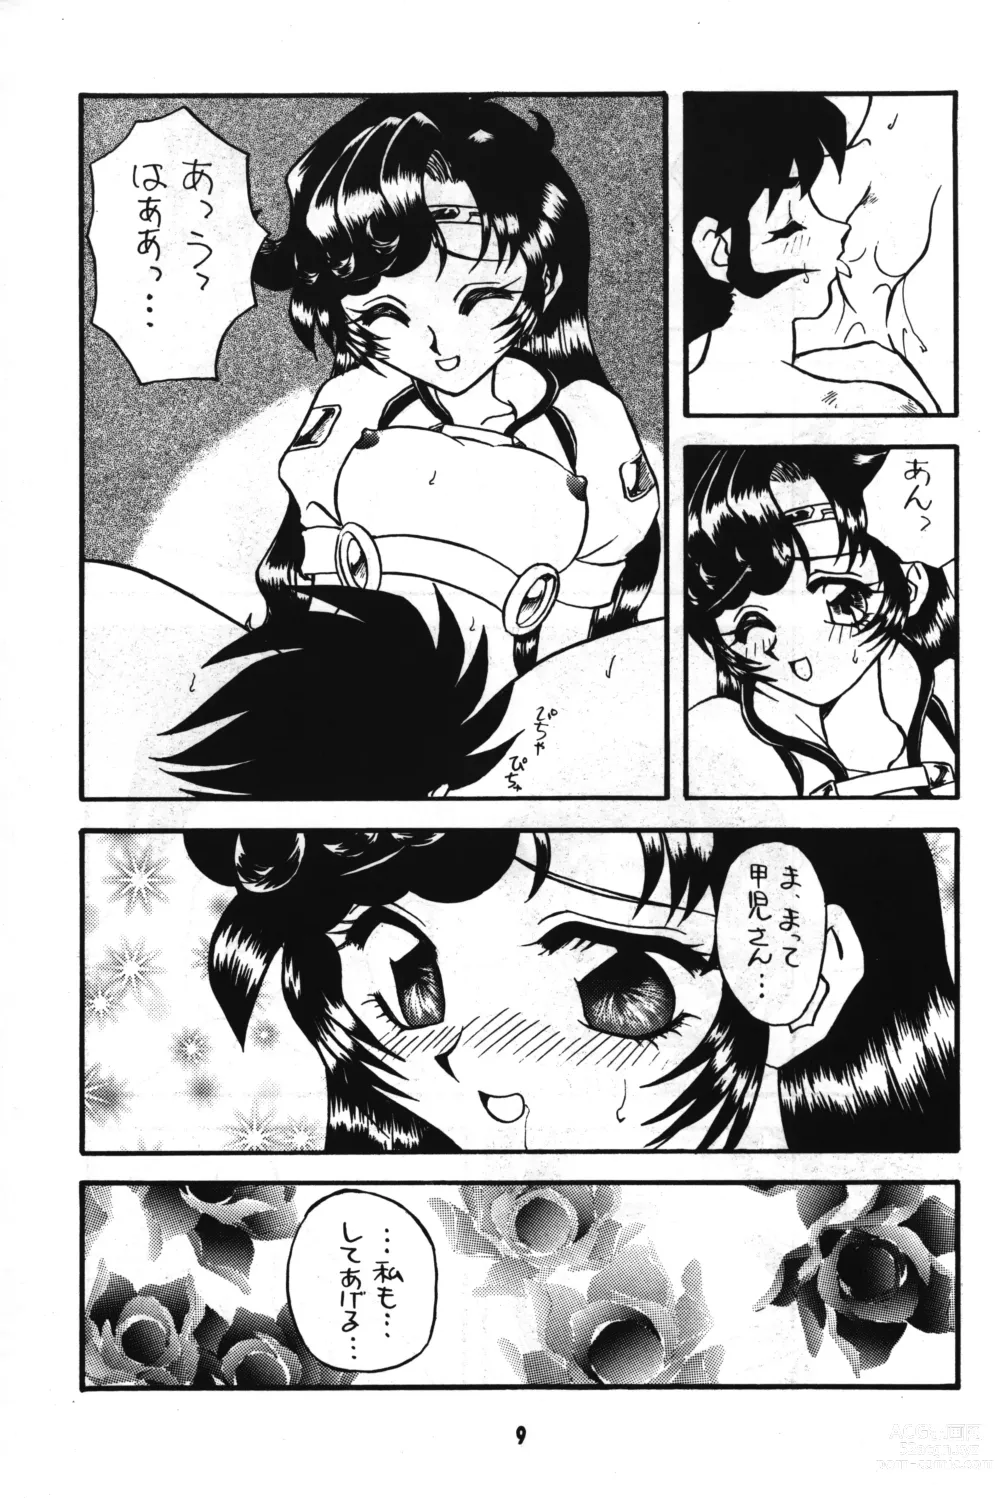 Page 8 of doujinshi Seigi wa Katsu no yo!!